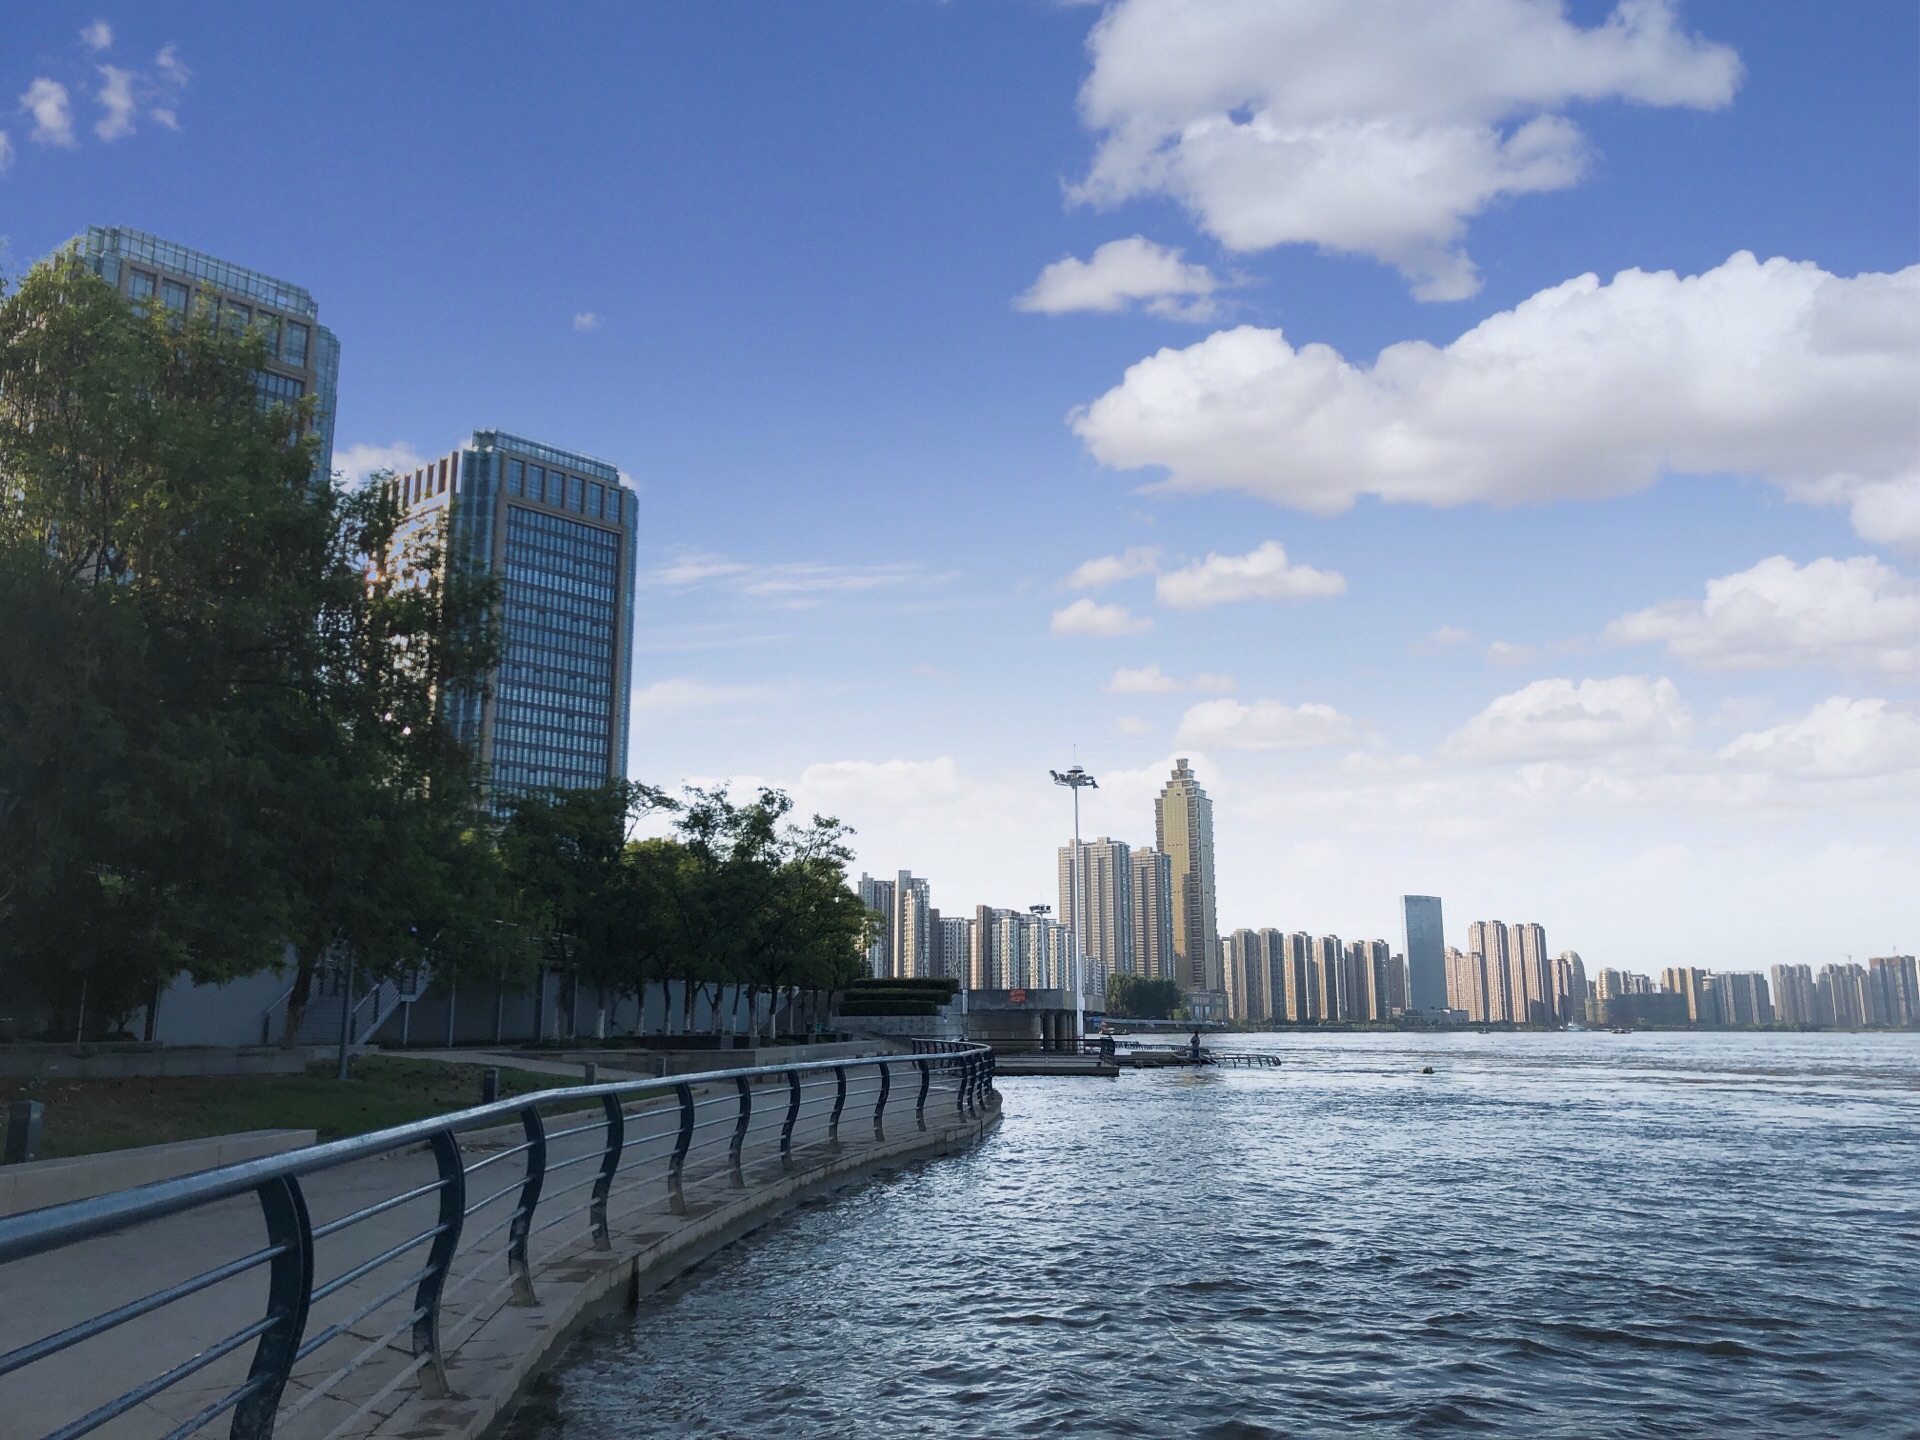 宜昌滨江公园又将提档升级 五年内打造最美滨江生态长廊-荆楚网-湖北日报网